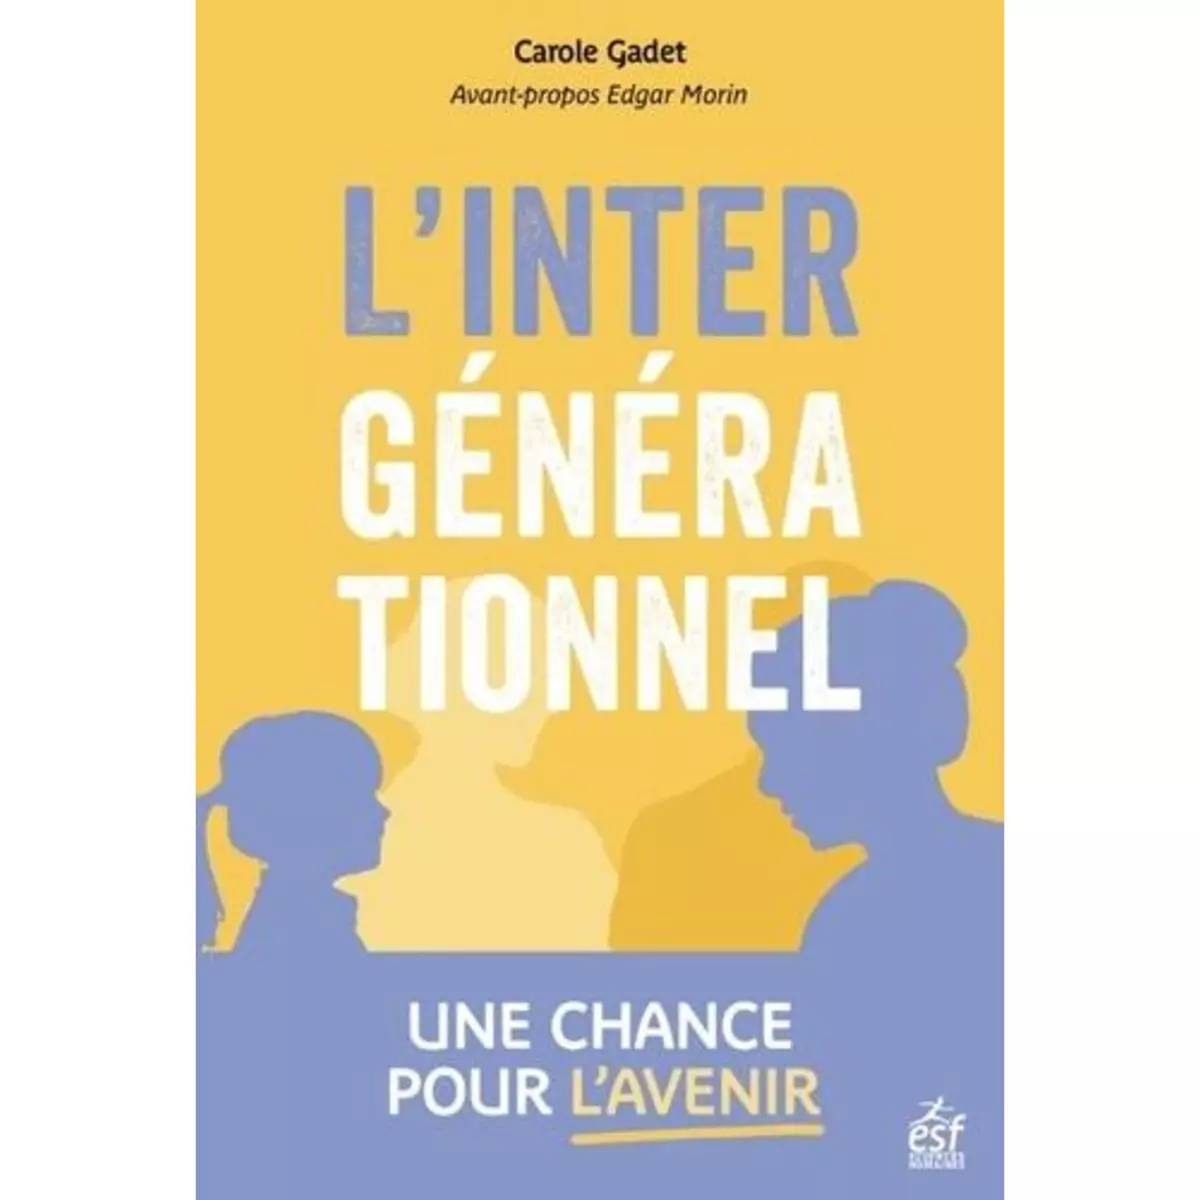  L'INTERGENERATIONNEL, UNE CHANCE POUR L'AVENIR !, Gadet Carole